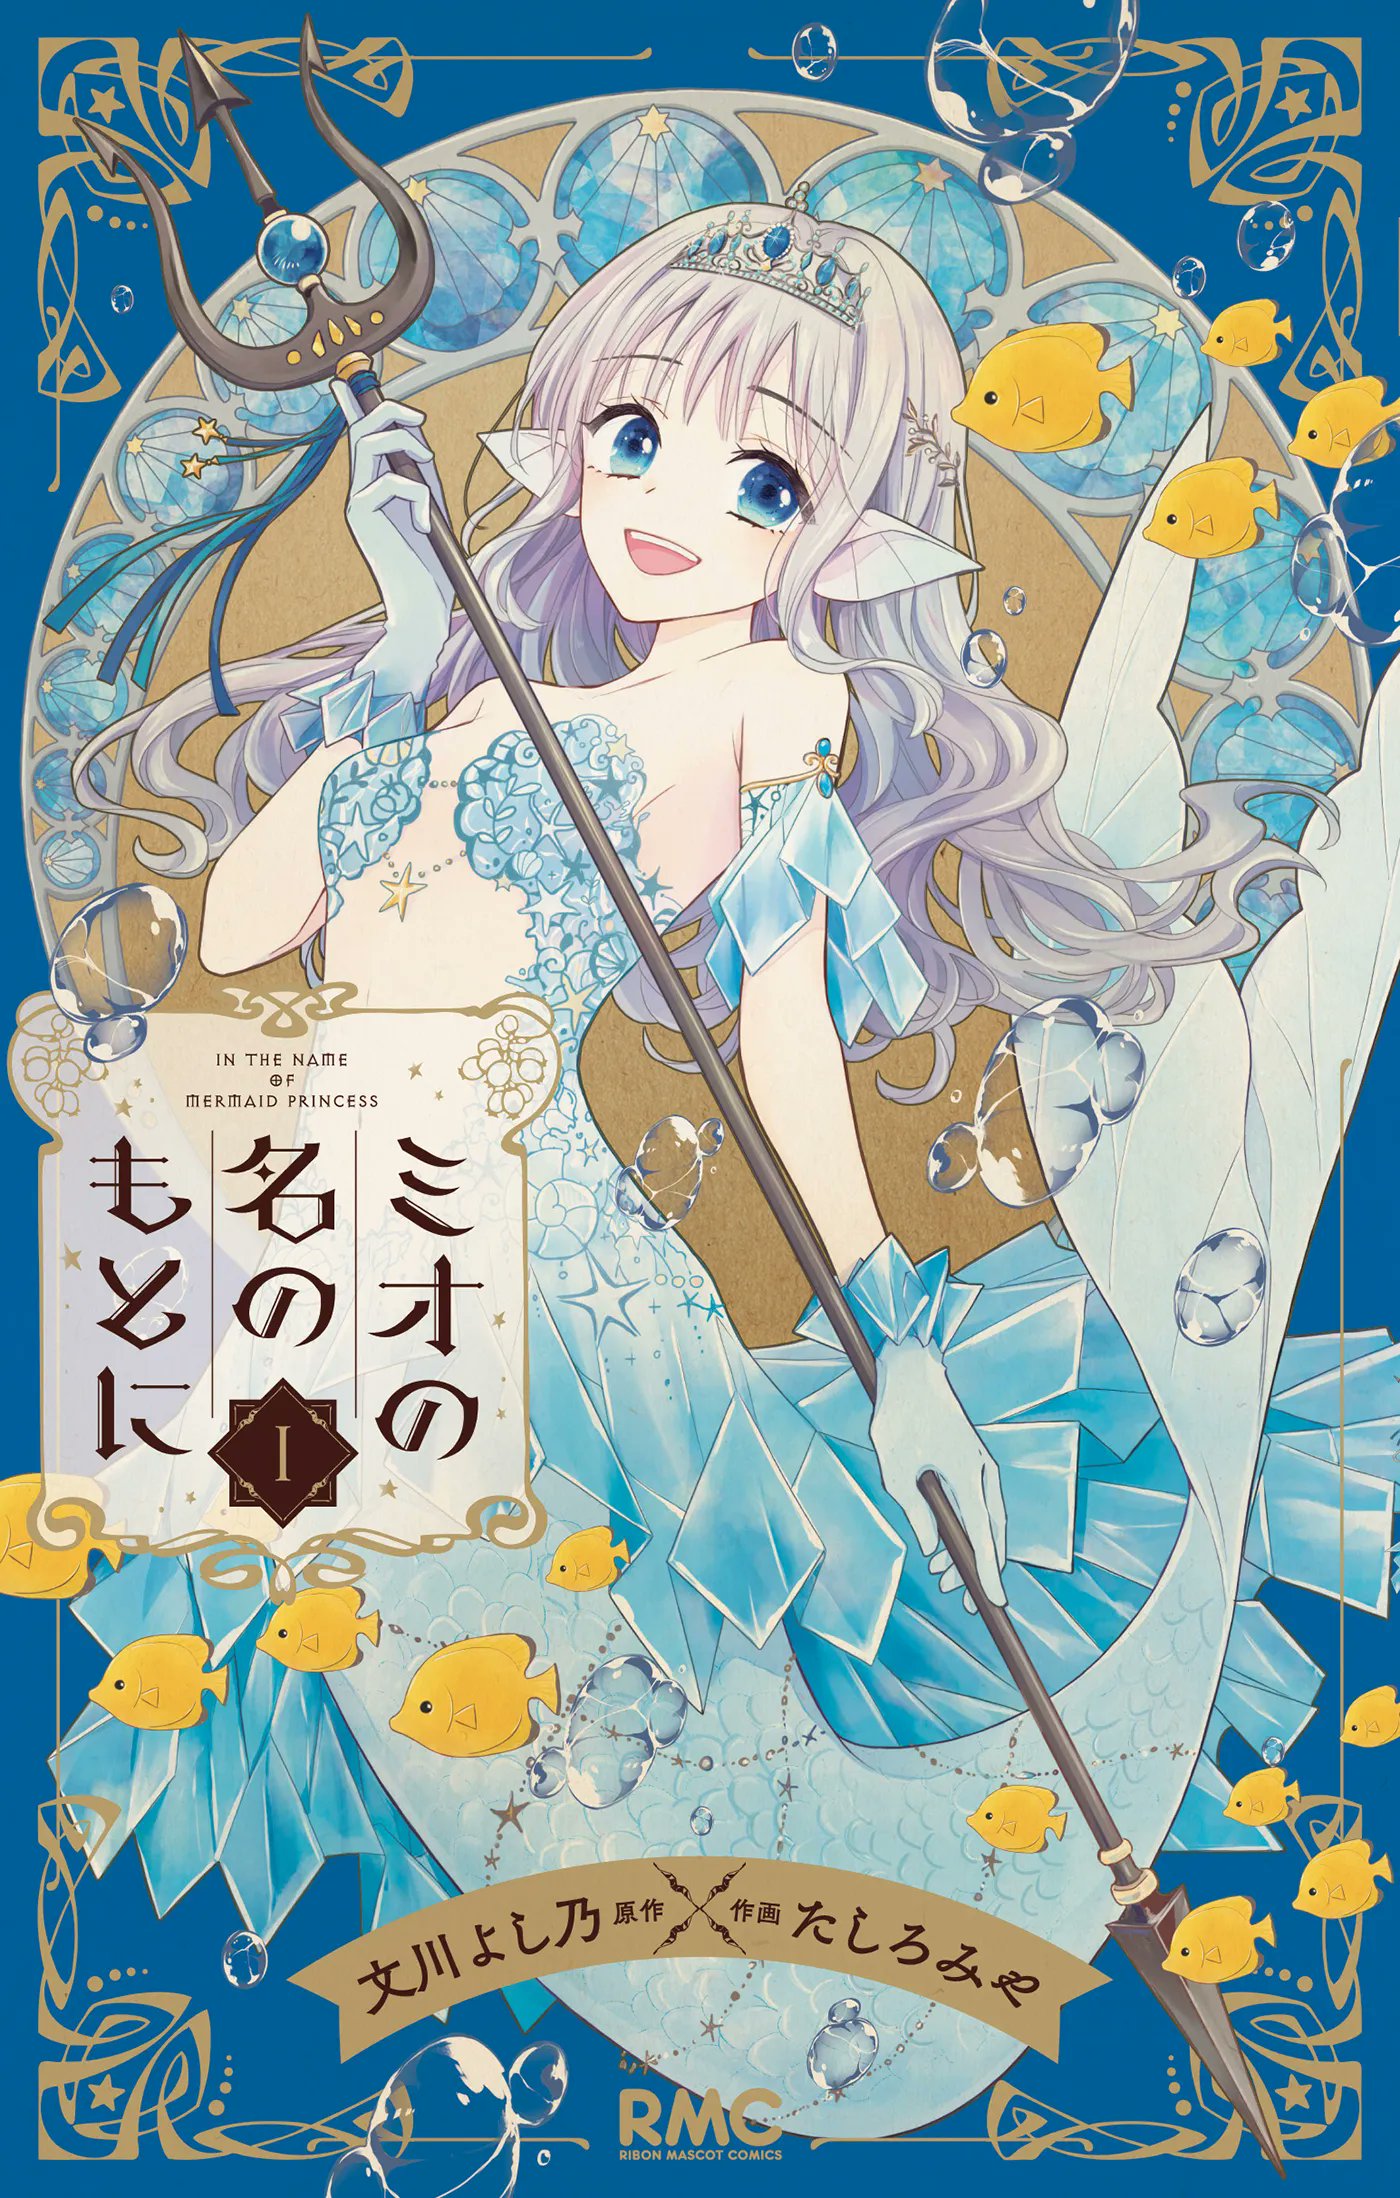 En el nombre de la princesa sirena de Yoshino Fumikawa (Historia) y Miya Tashiro (Arte)